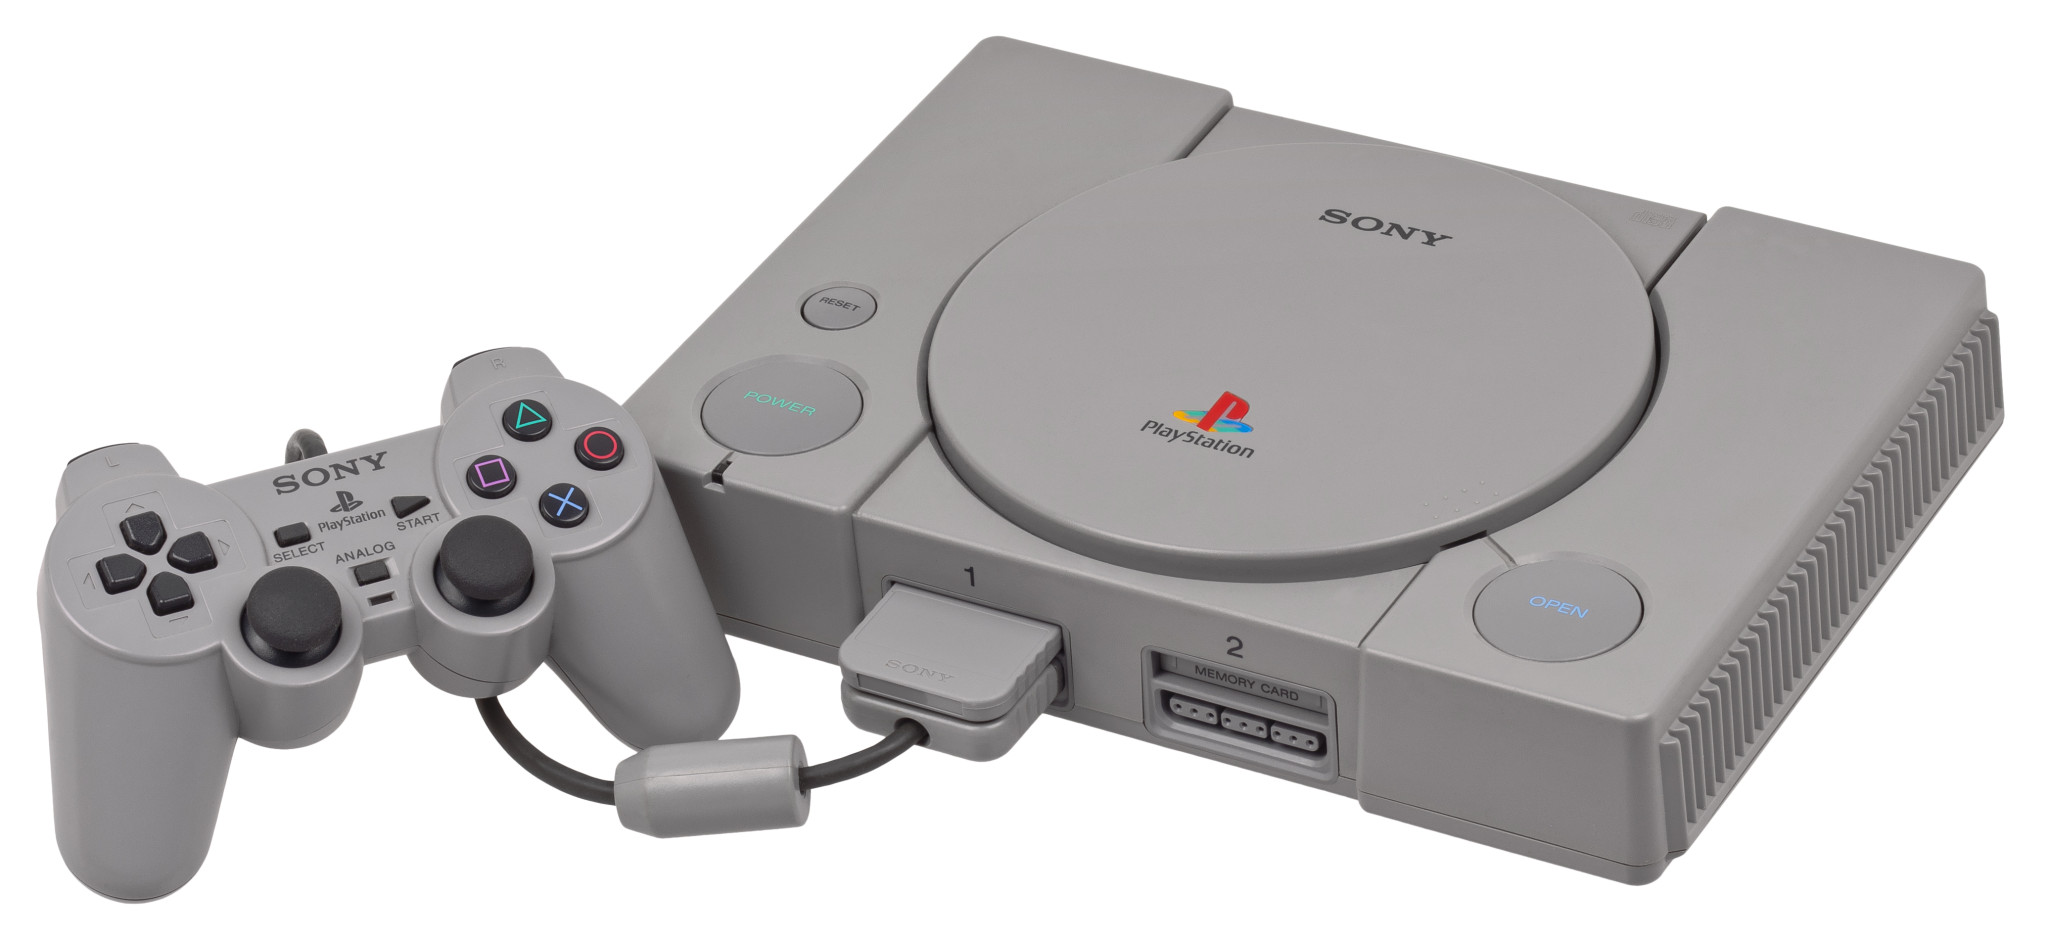 تعرف على تاريخ منصات Playstation وكيف إتجهت Sony لصناعة ألعاب الفيديو